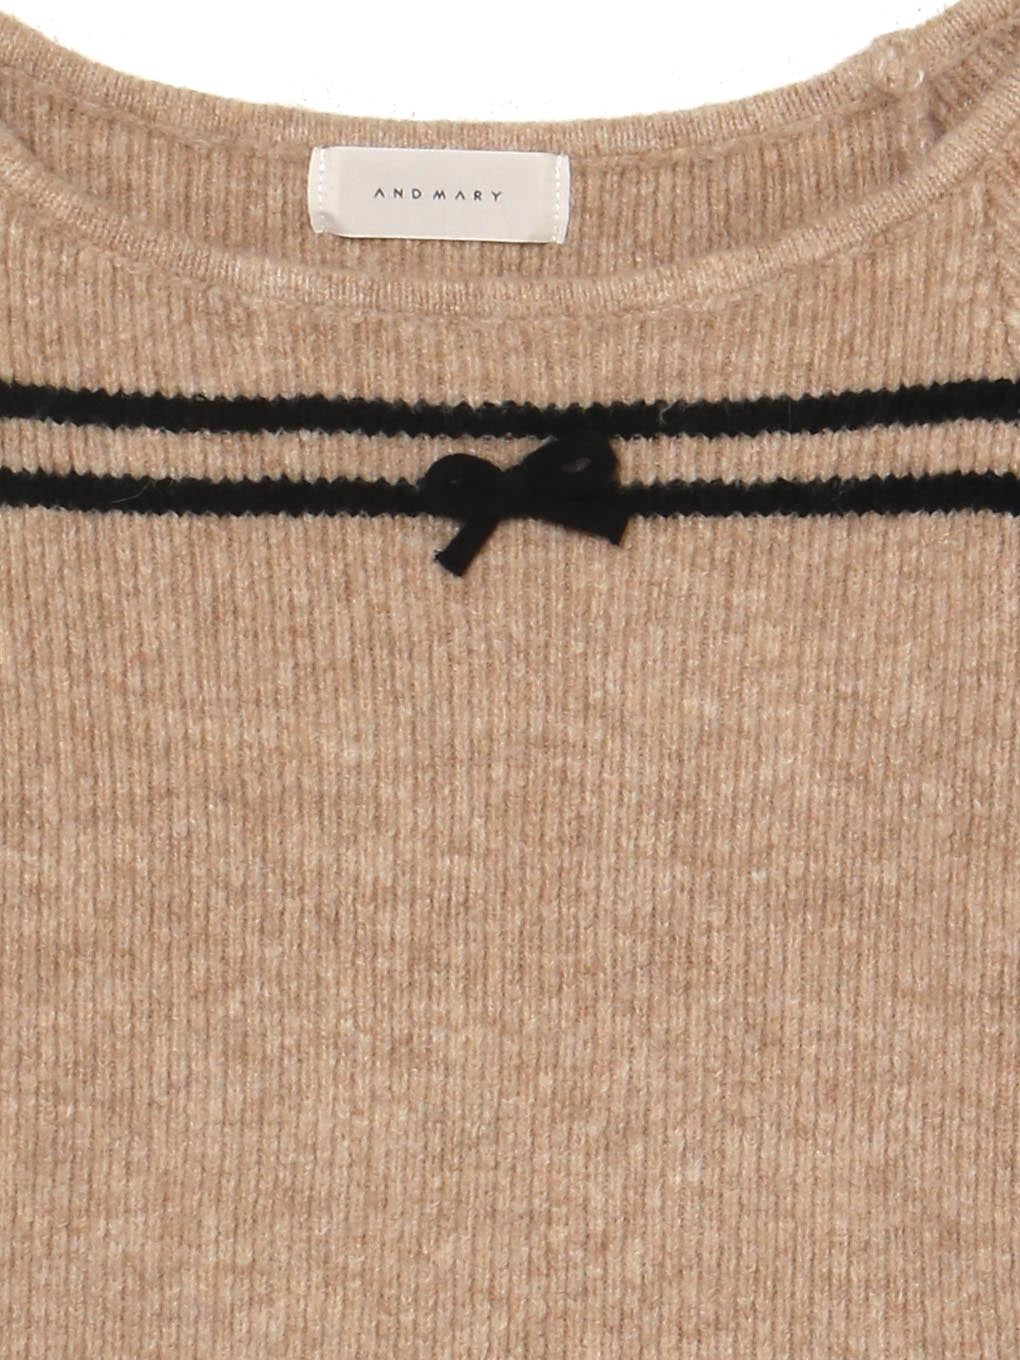 ANDMARY】Blair ribbon knit tops